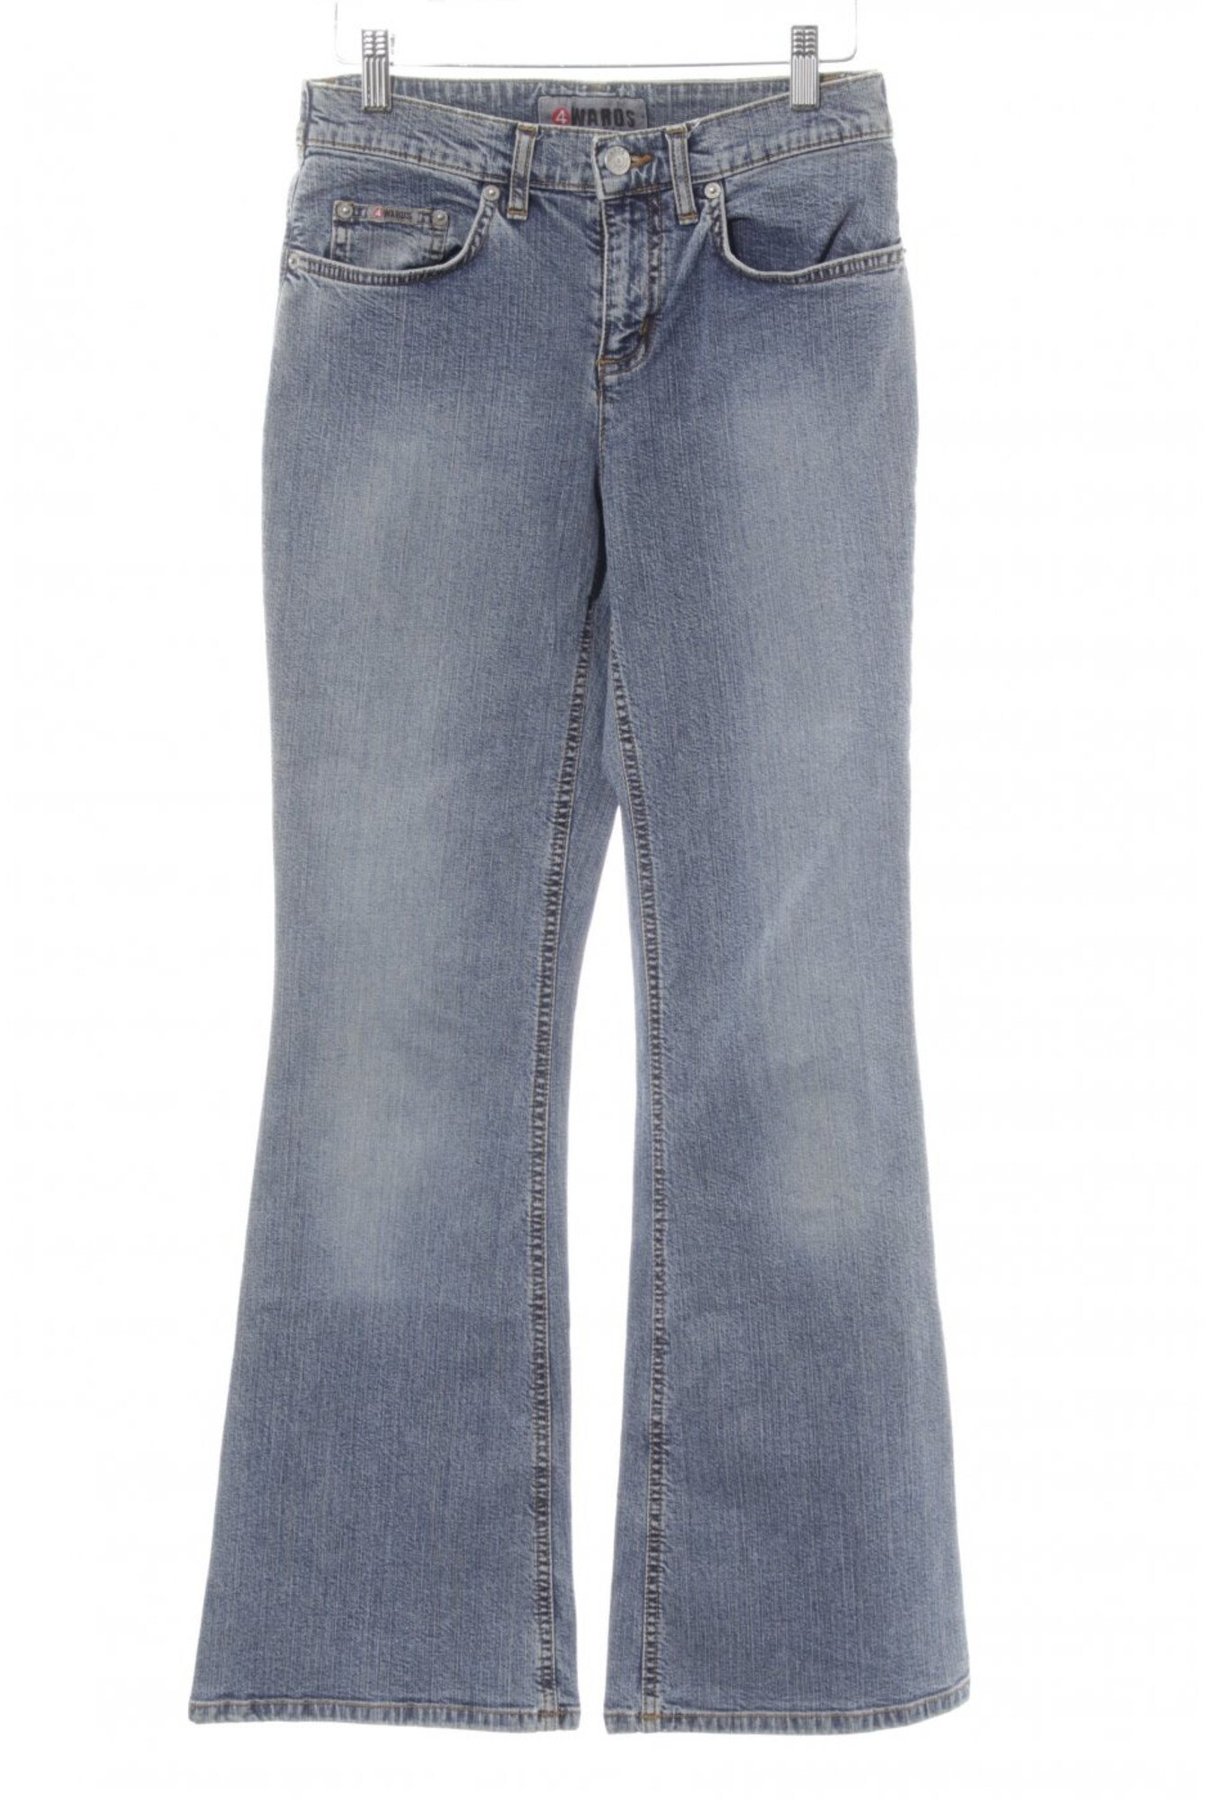 4Wards Jeans Bootcut Gr.34 NEU Damen Stretch Blau Used Denim Hose Flared L32 